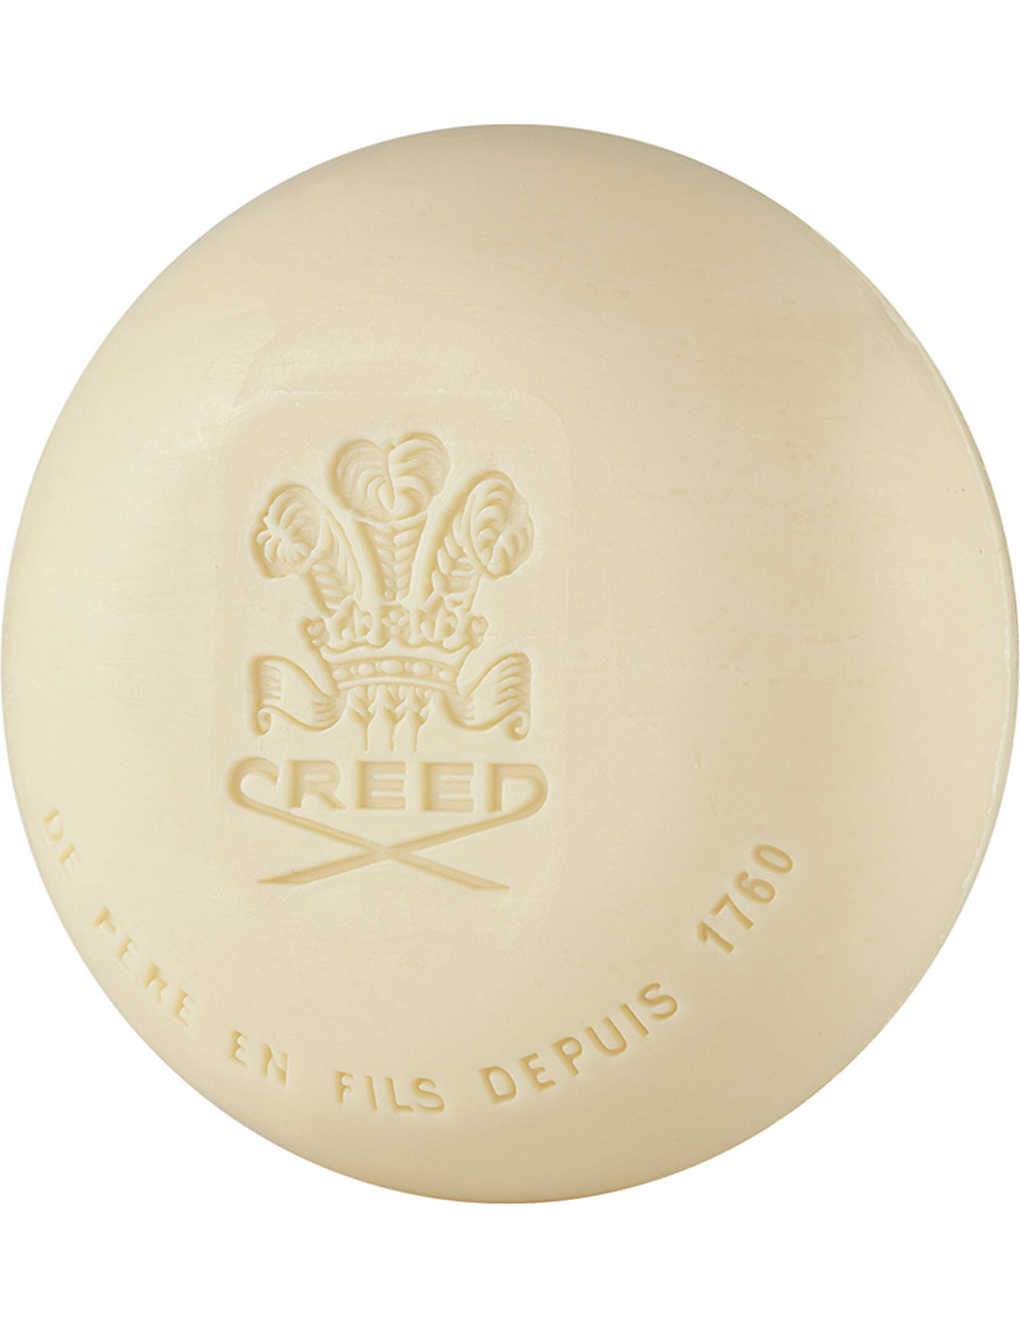 Creed Original Santal Tvål